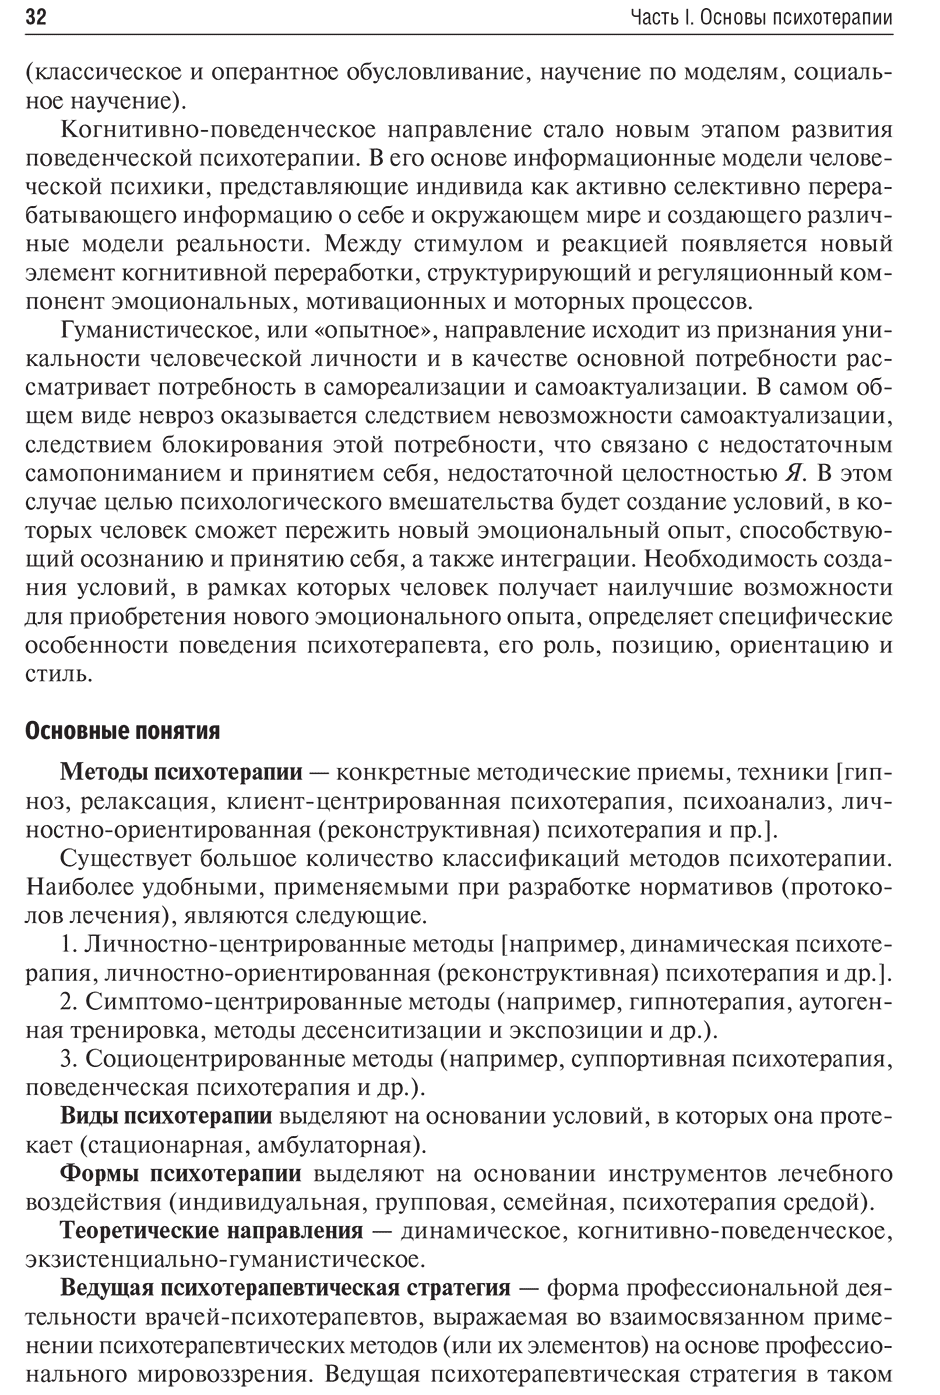 Пример страницы из книги "Психотерапия: учебник" - Васильева А. В.